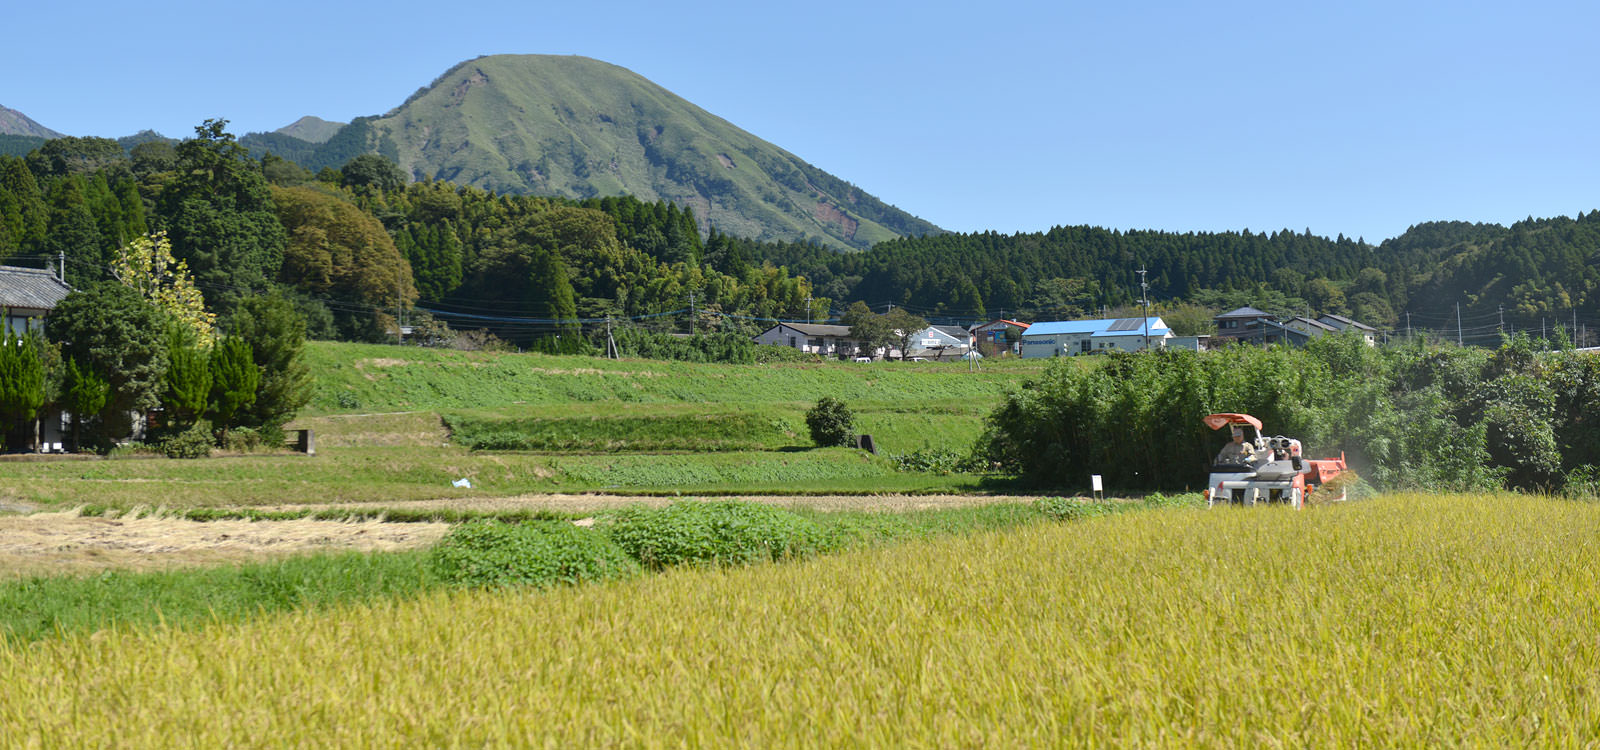 北野悦之さんが作る、無農薬・無施肥栽培のお米。